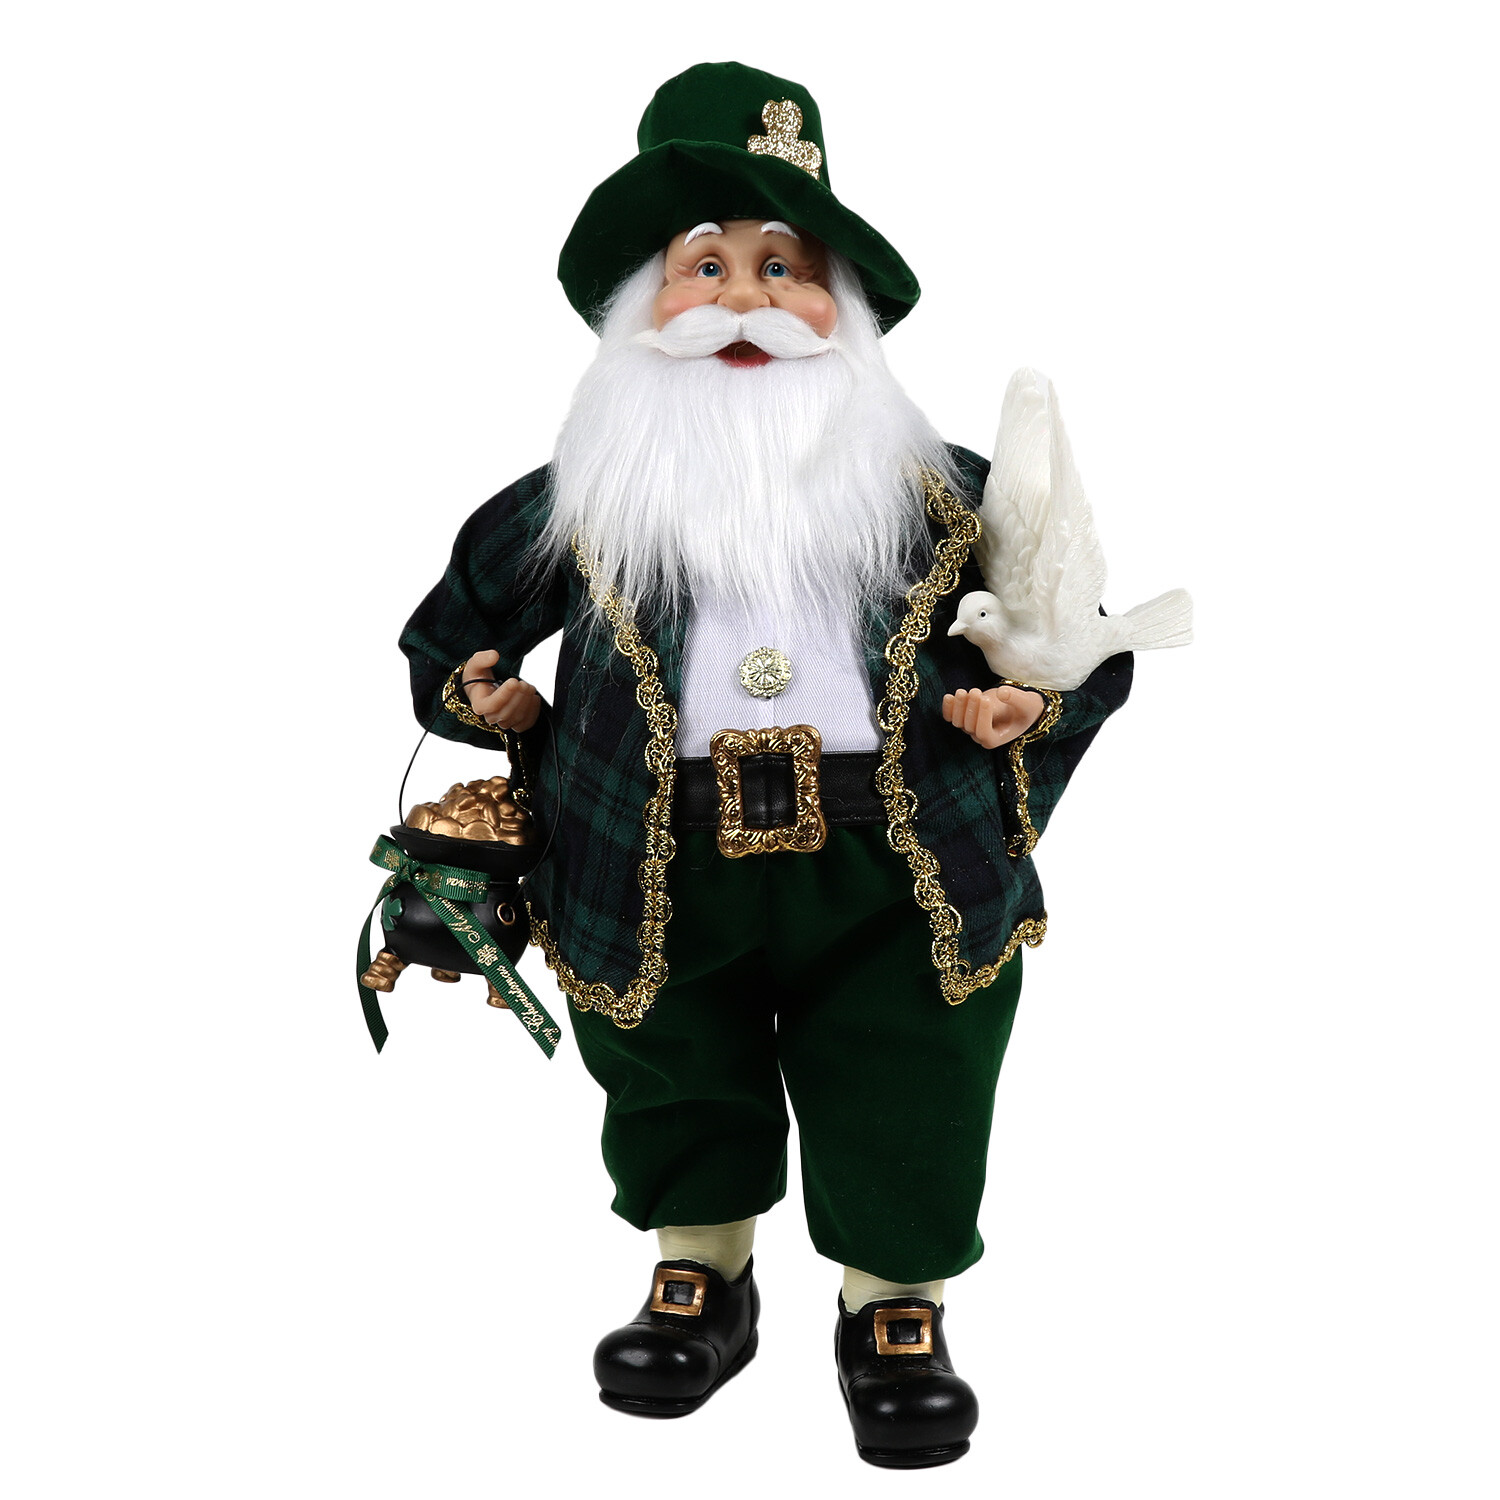 Irish Standing Santa - Green Image 1